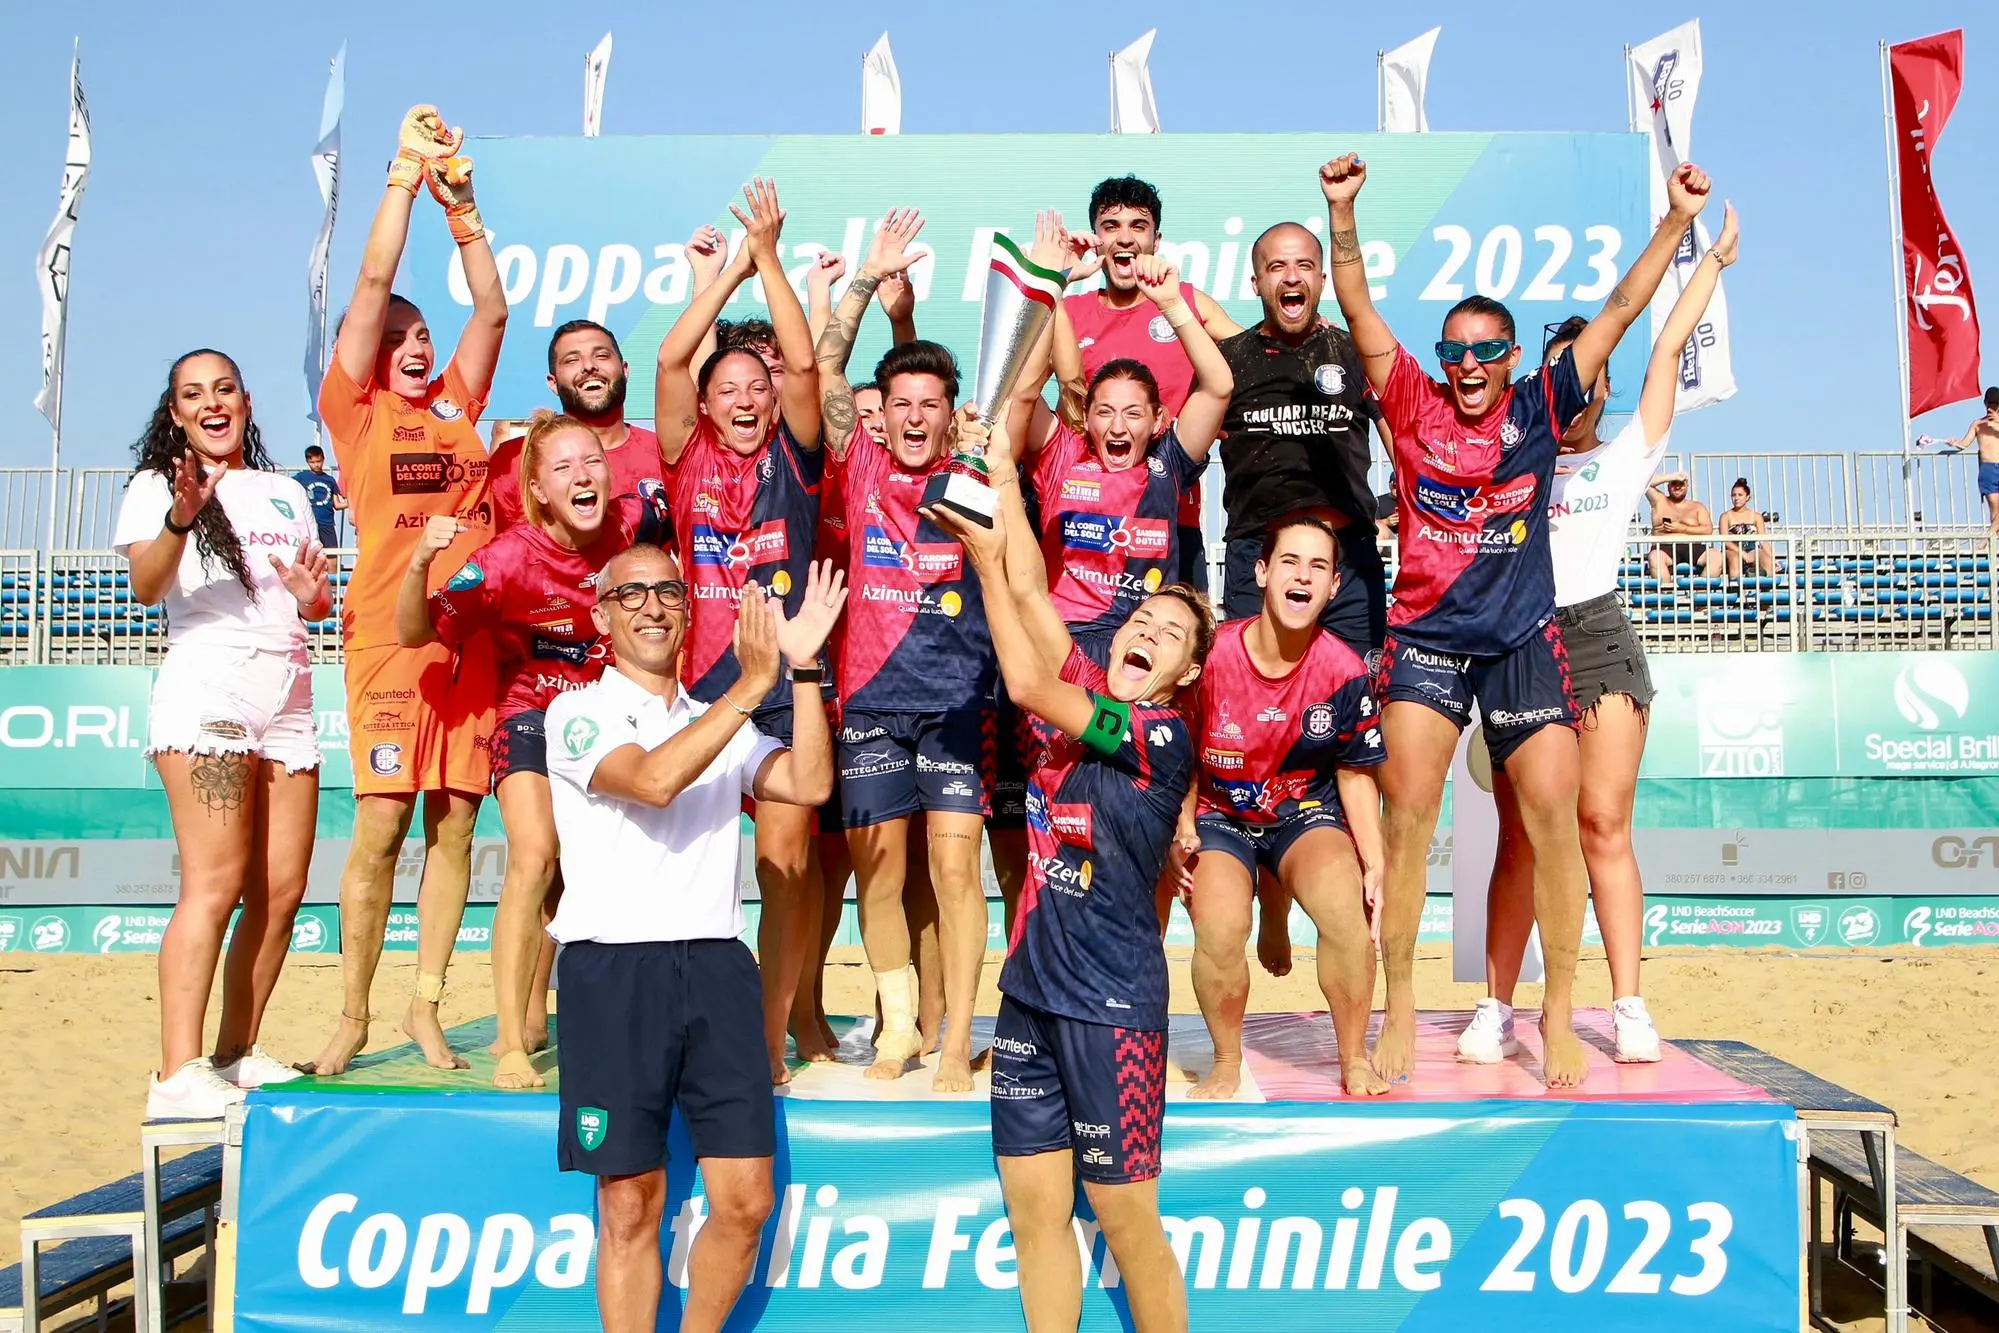 Il Cagliari beach soccer festeggia la vittoria della Coppa Italia femminile (foto Lnd)